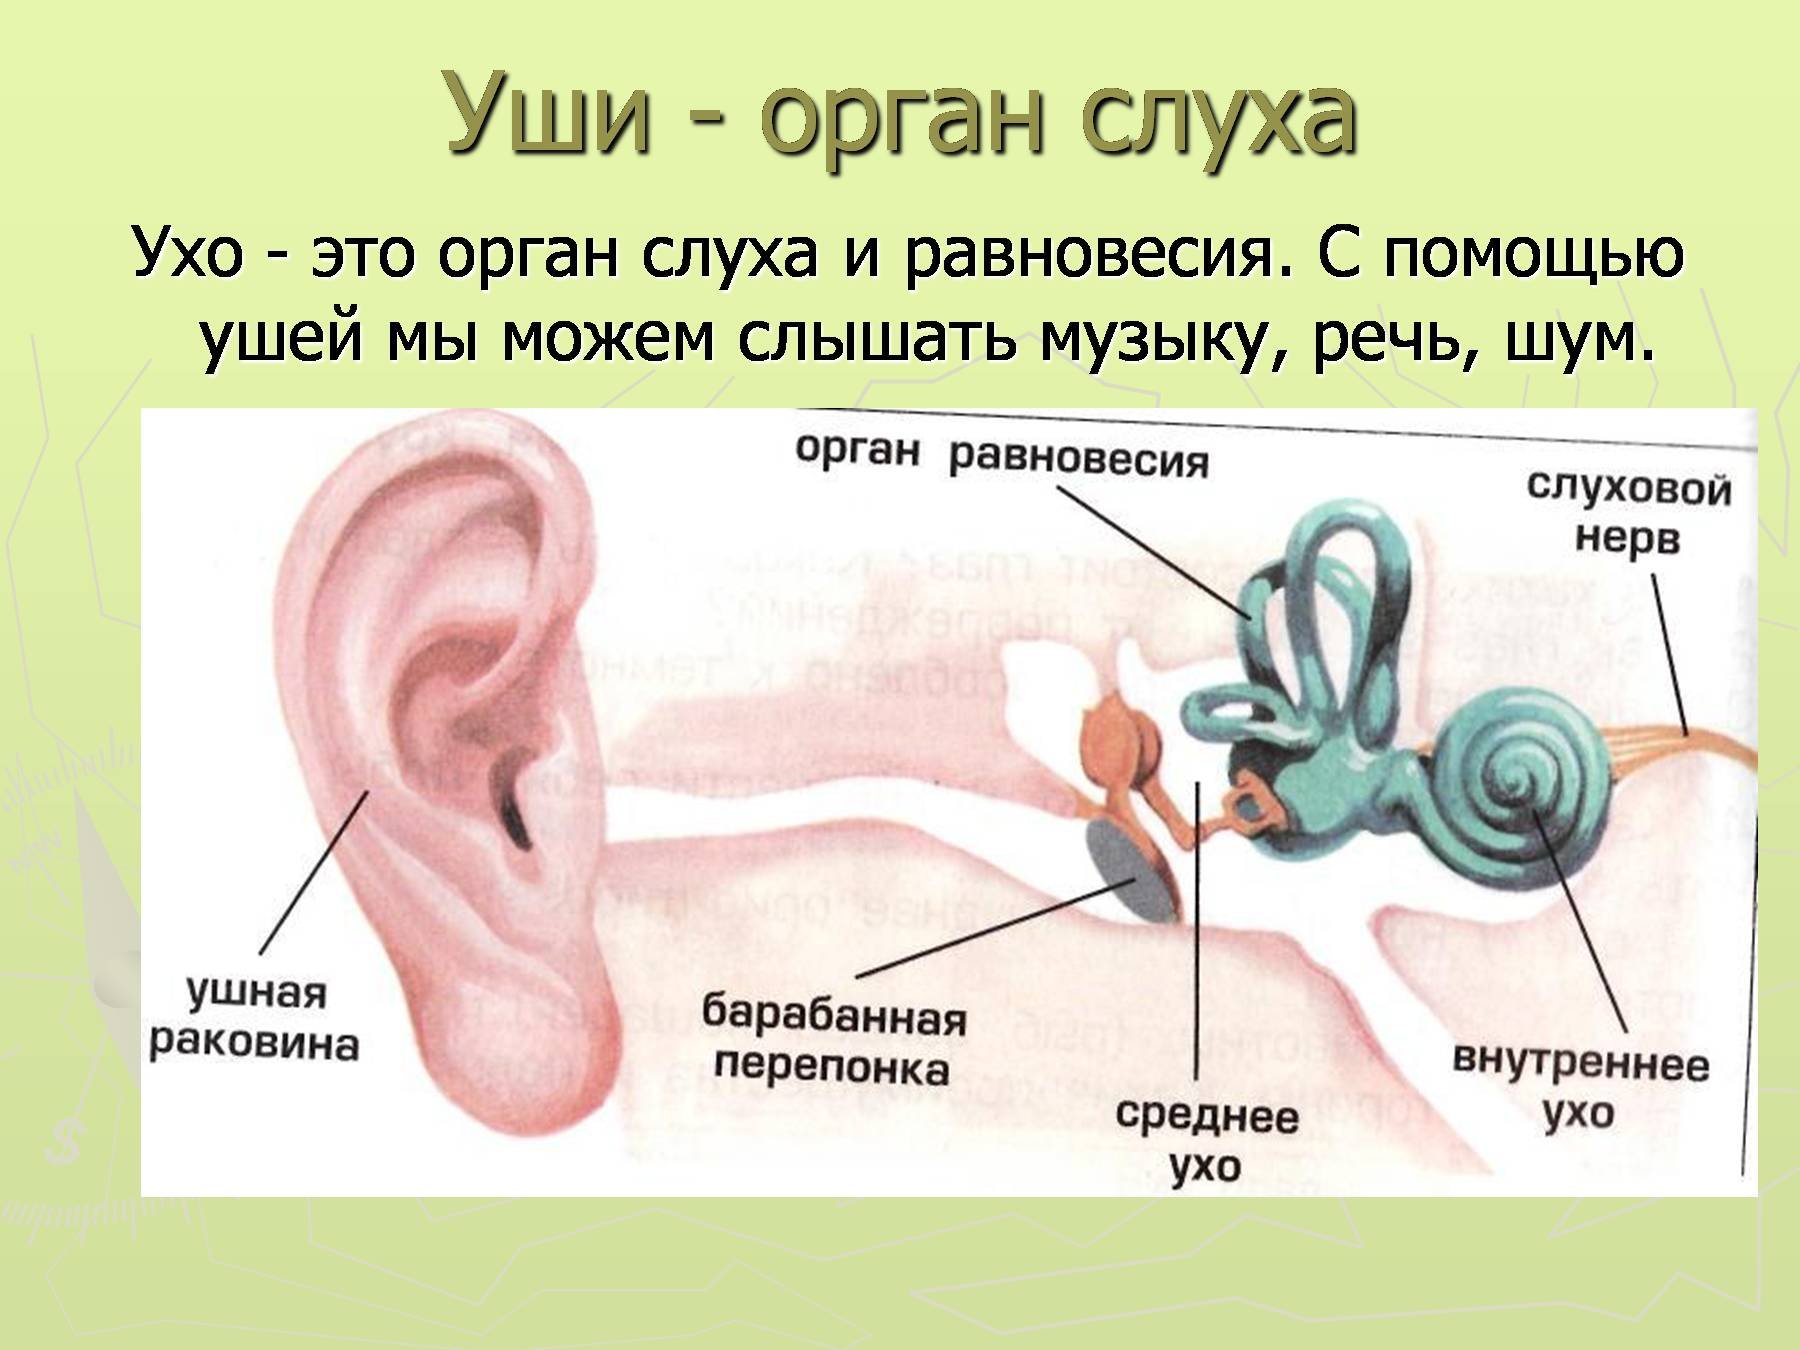 Задание орган слуха. Уши орган слуха 3 класс окружающий мир. Органы слуха человека 3 класс окружающий мир. Картинка строение уха человека для детей. Орган слуха доклад 3 класс окружающий мир.